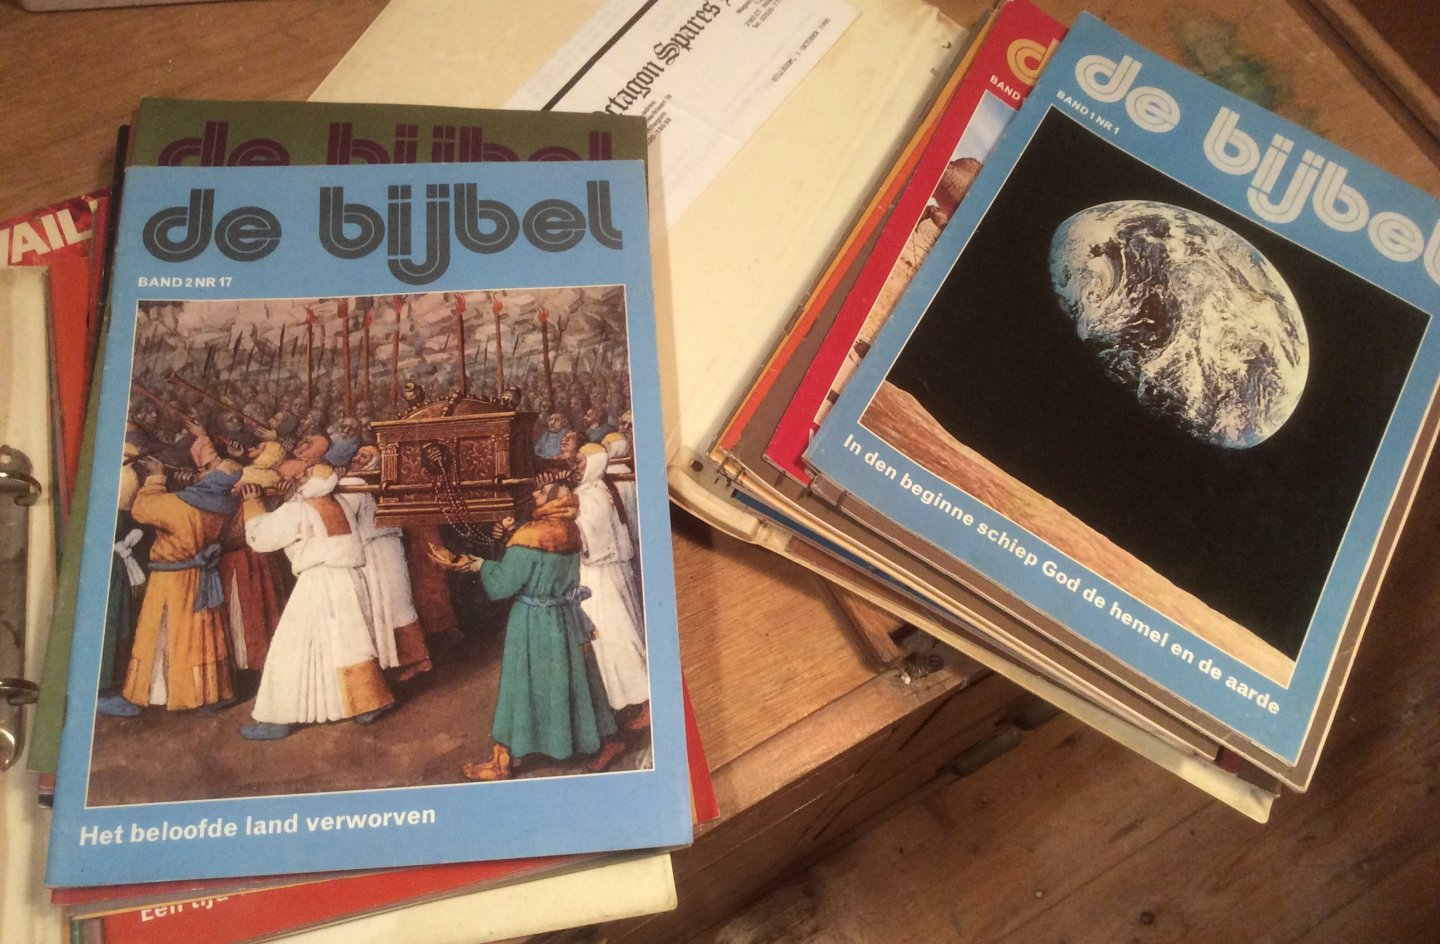 Bijbel - Complete bijbel in 4 banden, Band 1 en 2